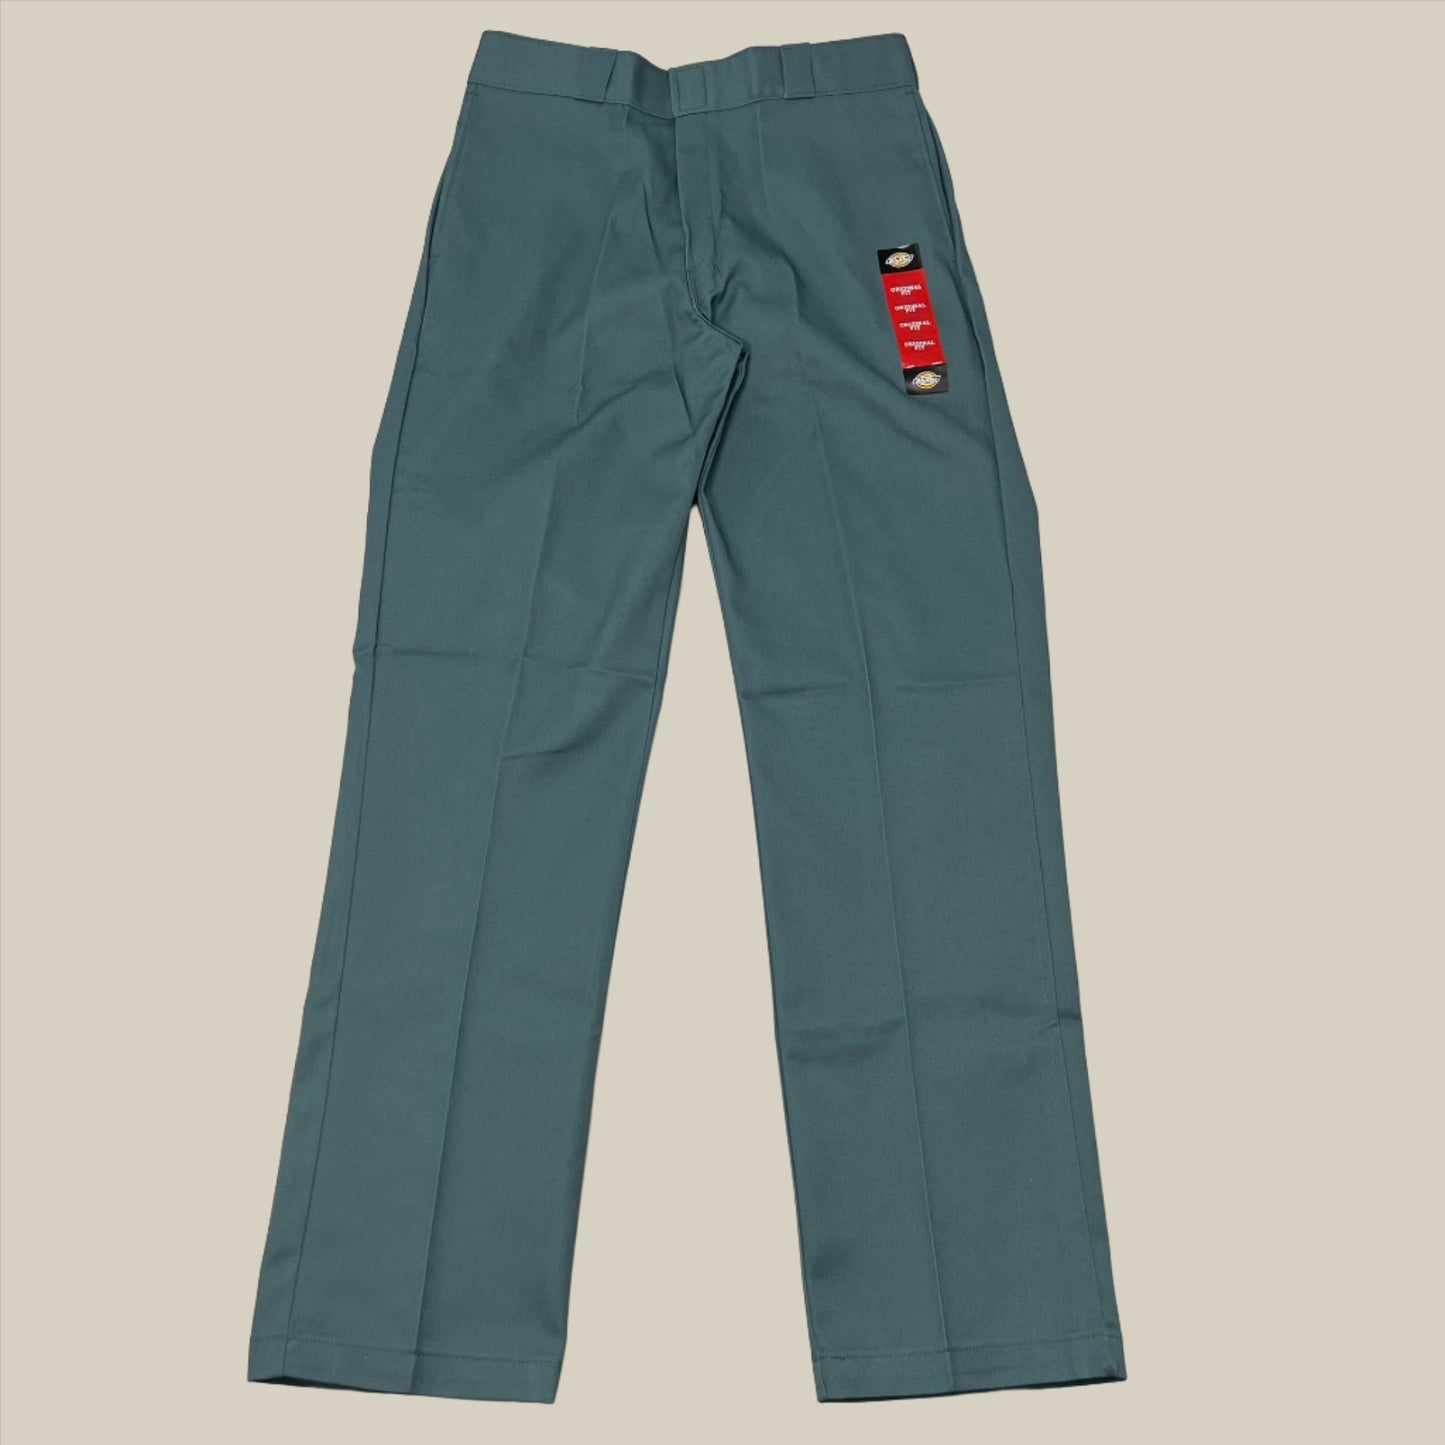 DICKIES Original 874 Original Fit Work Pants Men's Sz 36X32 Lincoln Green 874LN